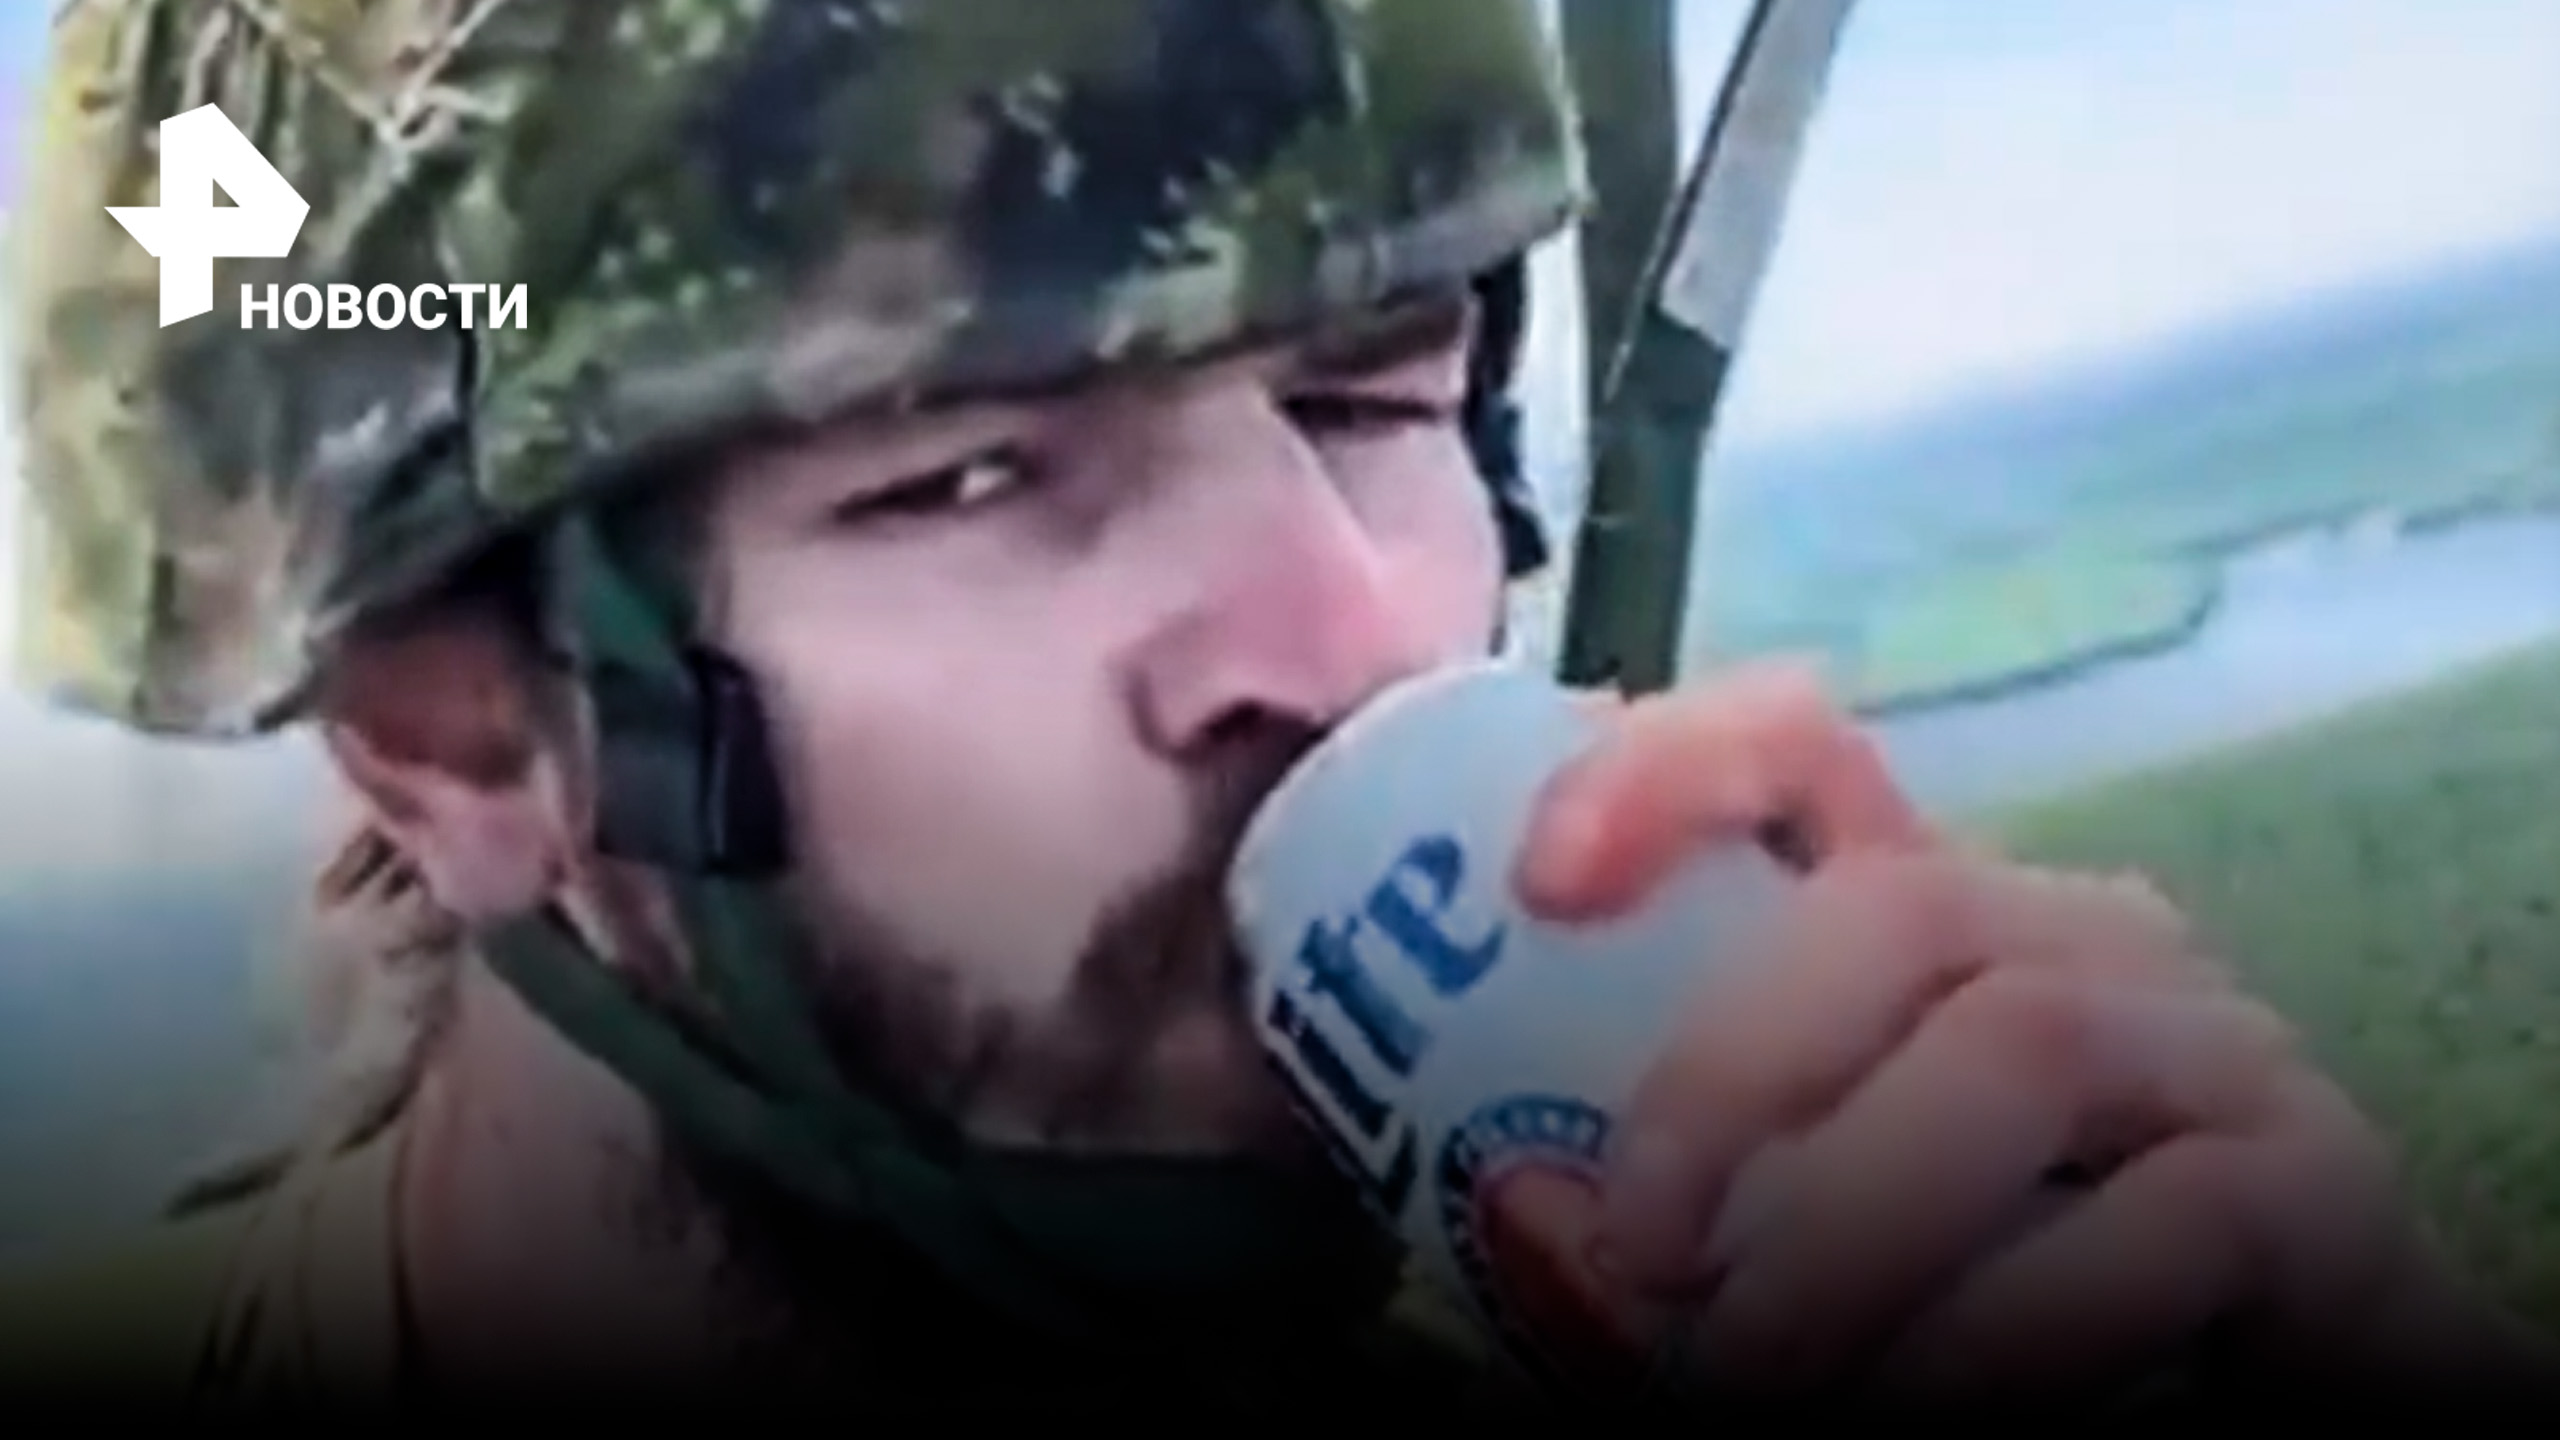 В Канаде десантник прыгнул с парашютом с пивом в руках / РЕН Новости